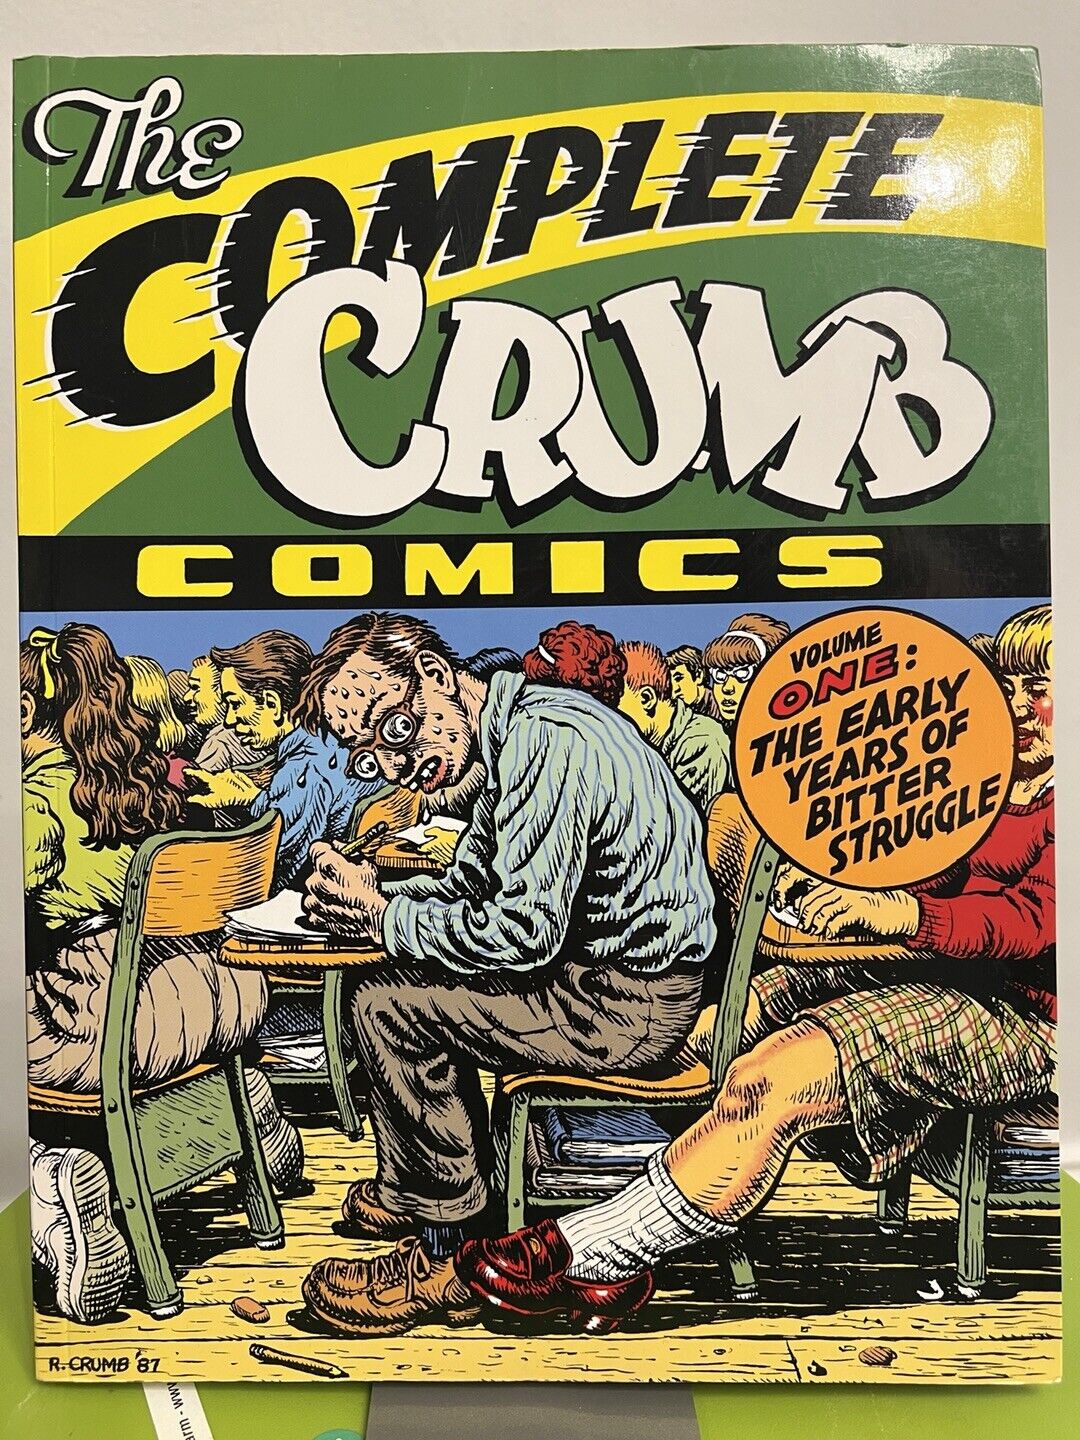 The Complete Crumb Comics #1 (Fantagraphics Books, October 1987)